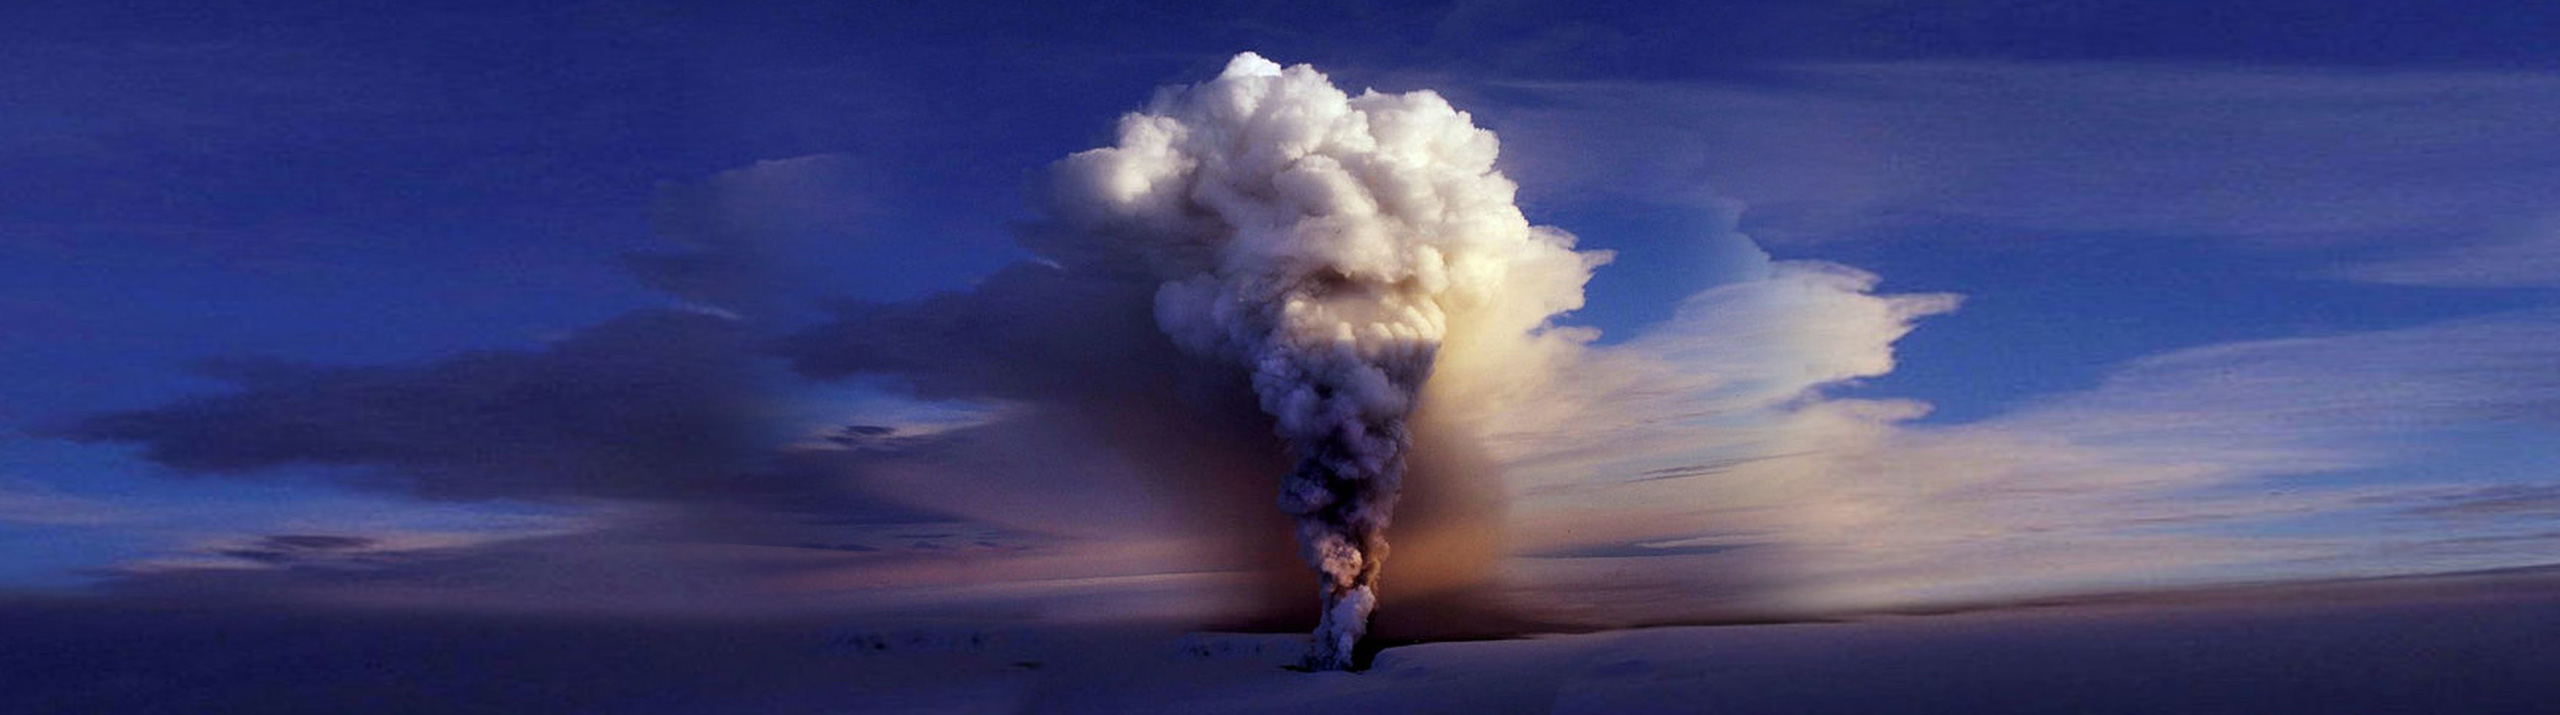 Vulkanen Grimsvötn - vulkaner i Island